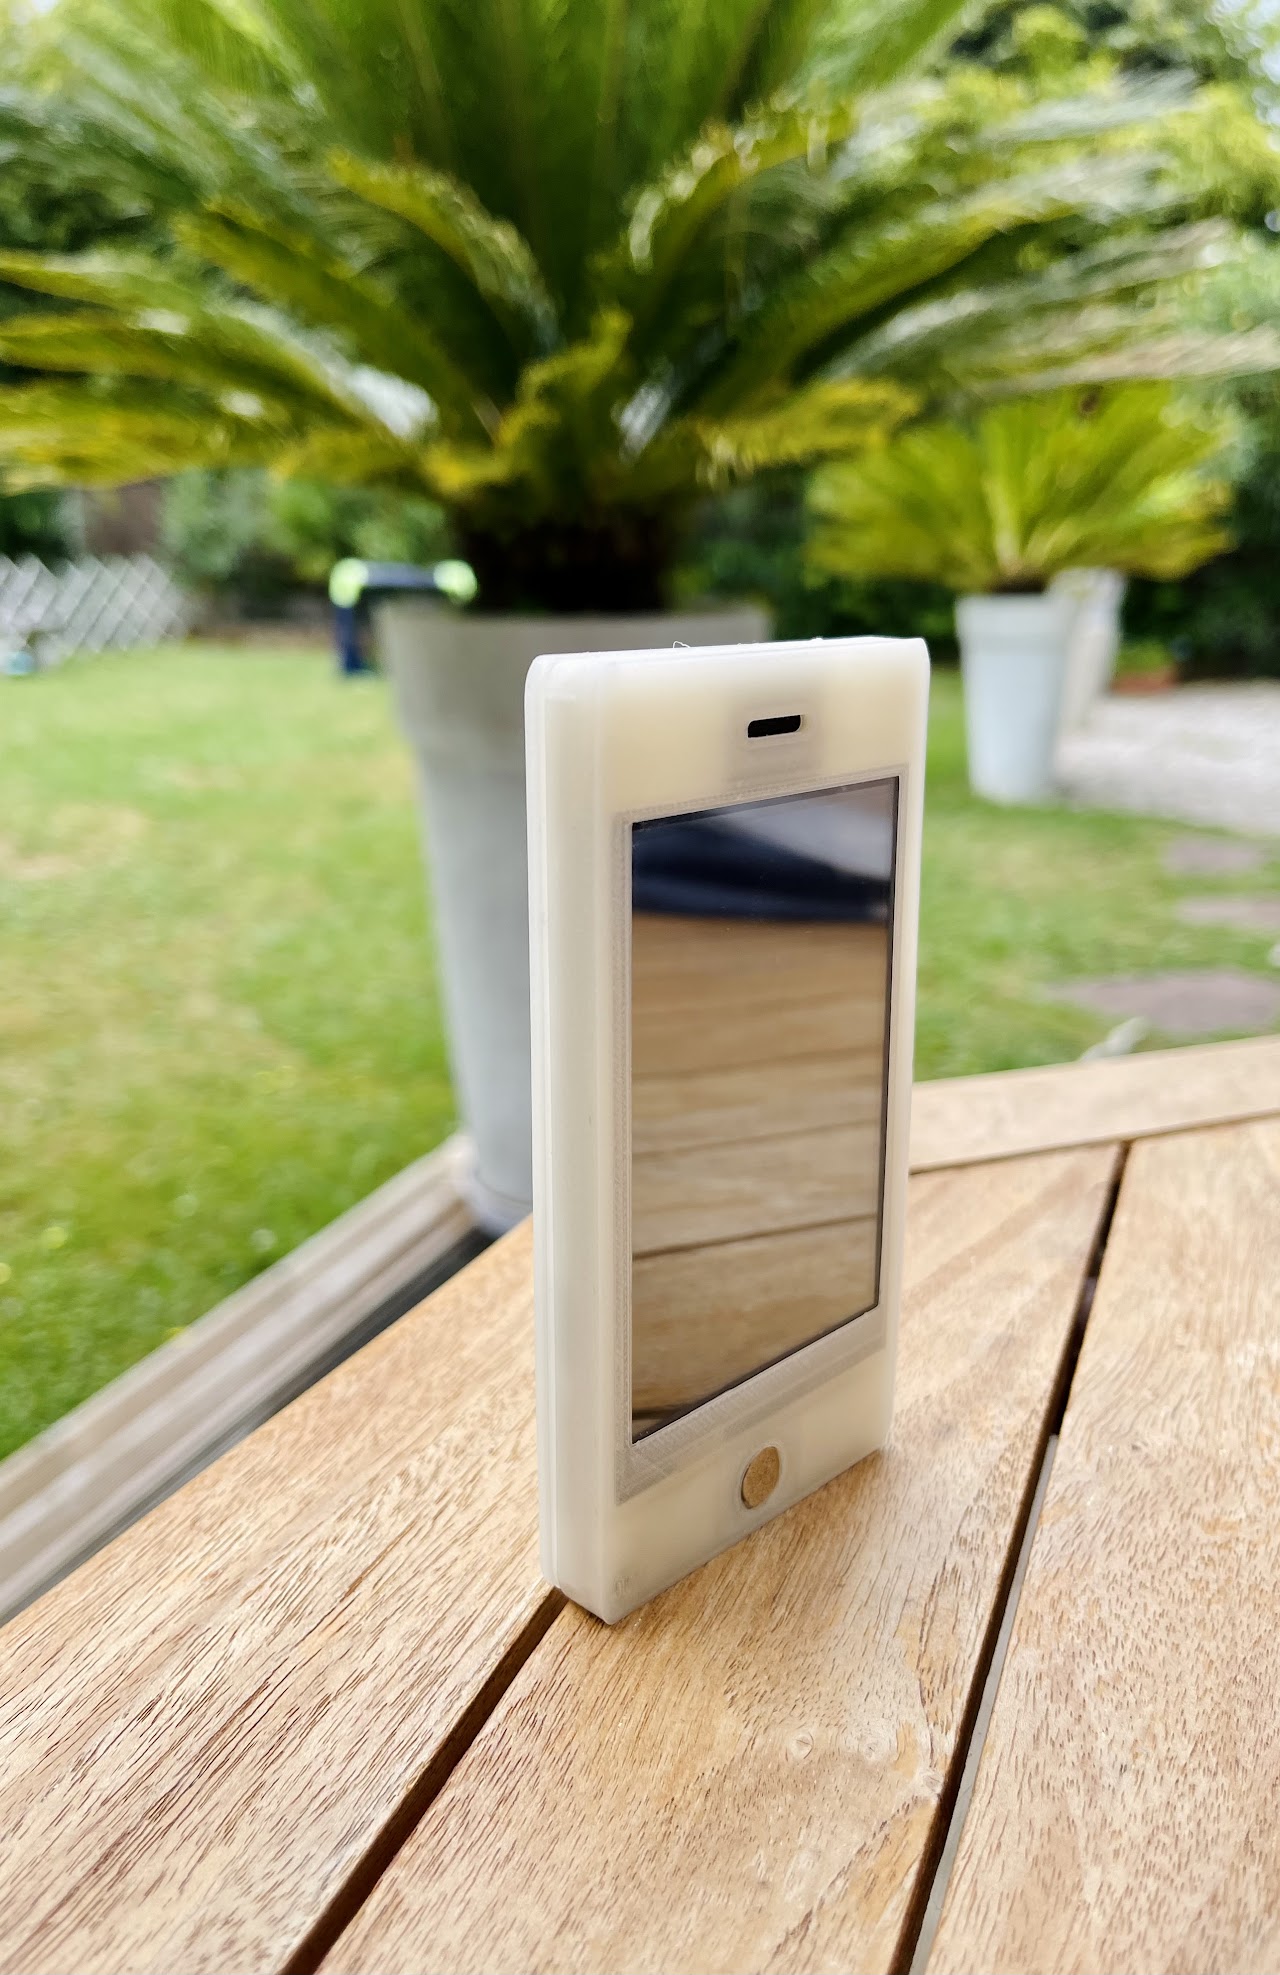 Image du téléphone de face posé verticalement sur une table en bois